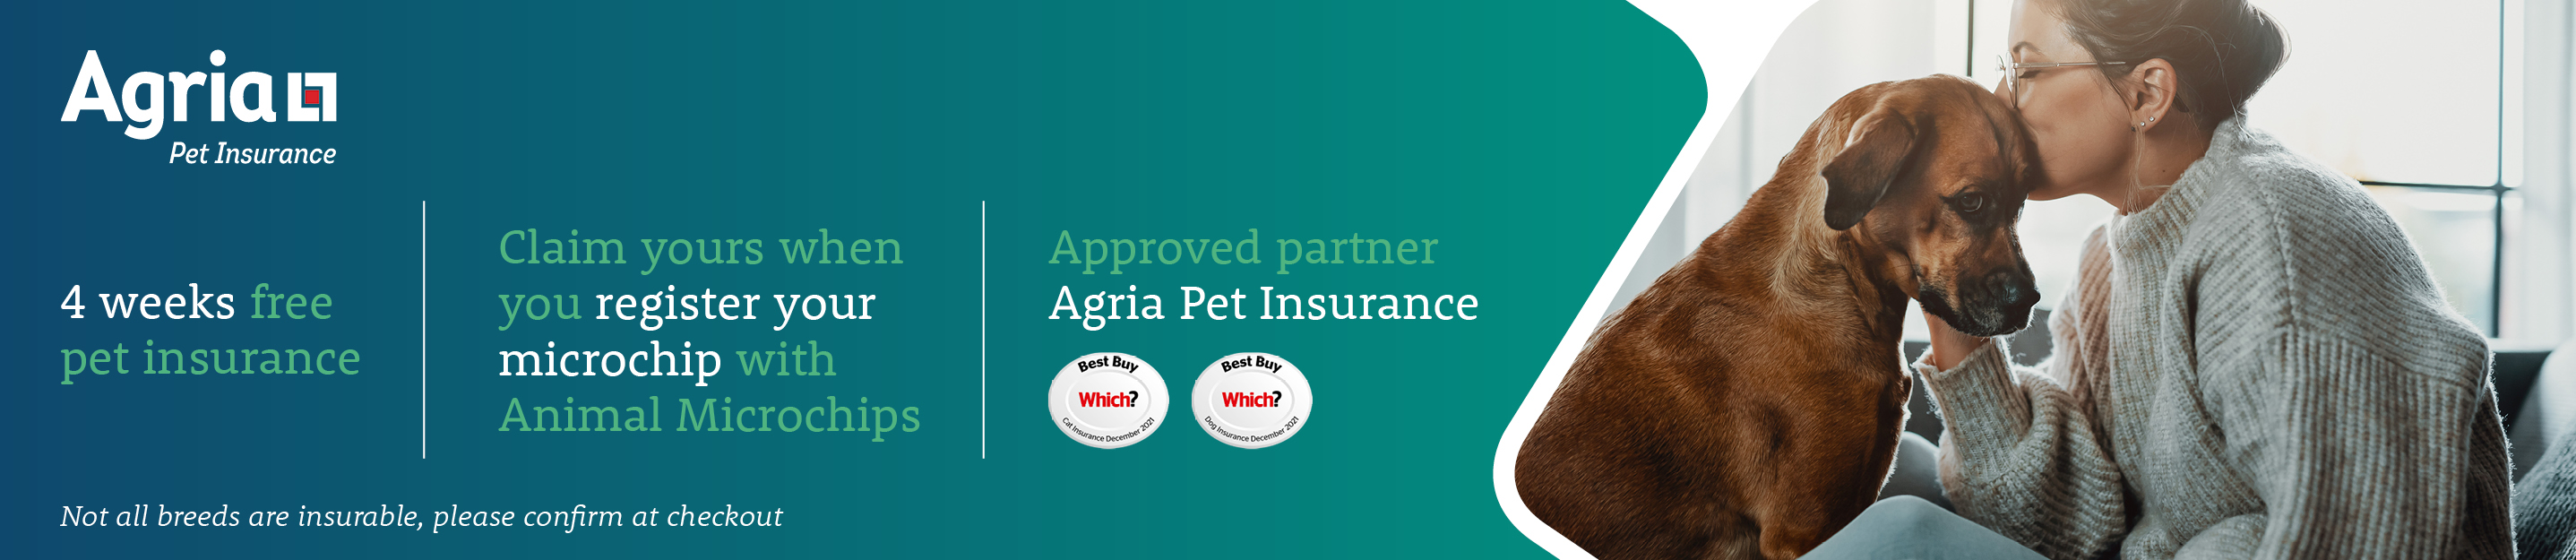 4 weeks free Agria Pet Insruance